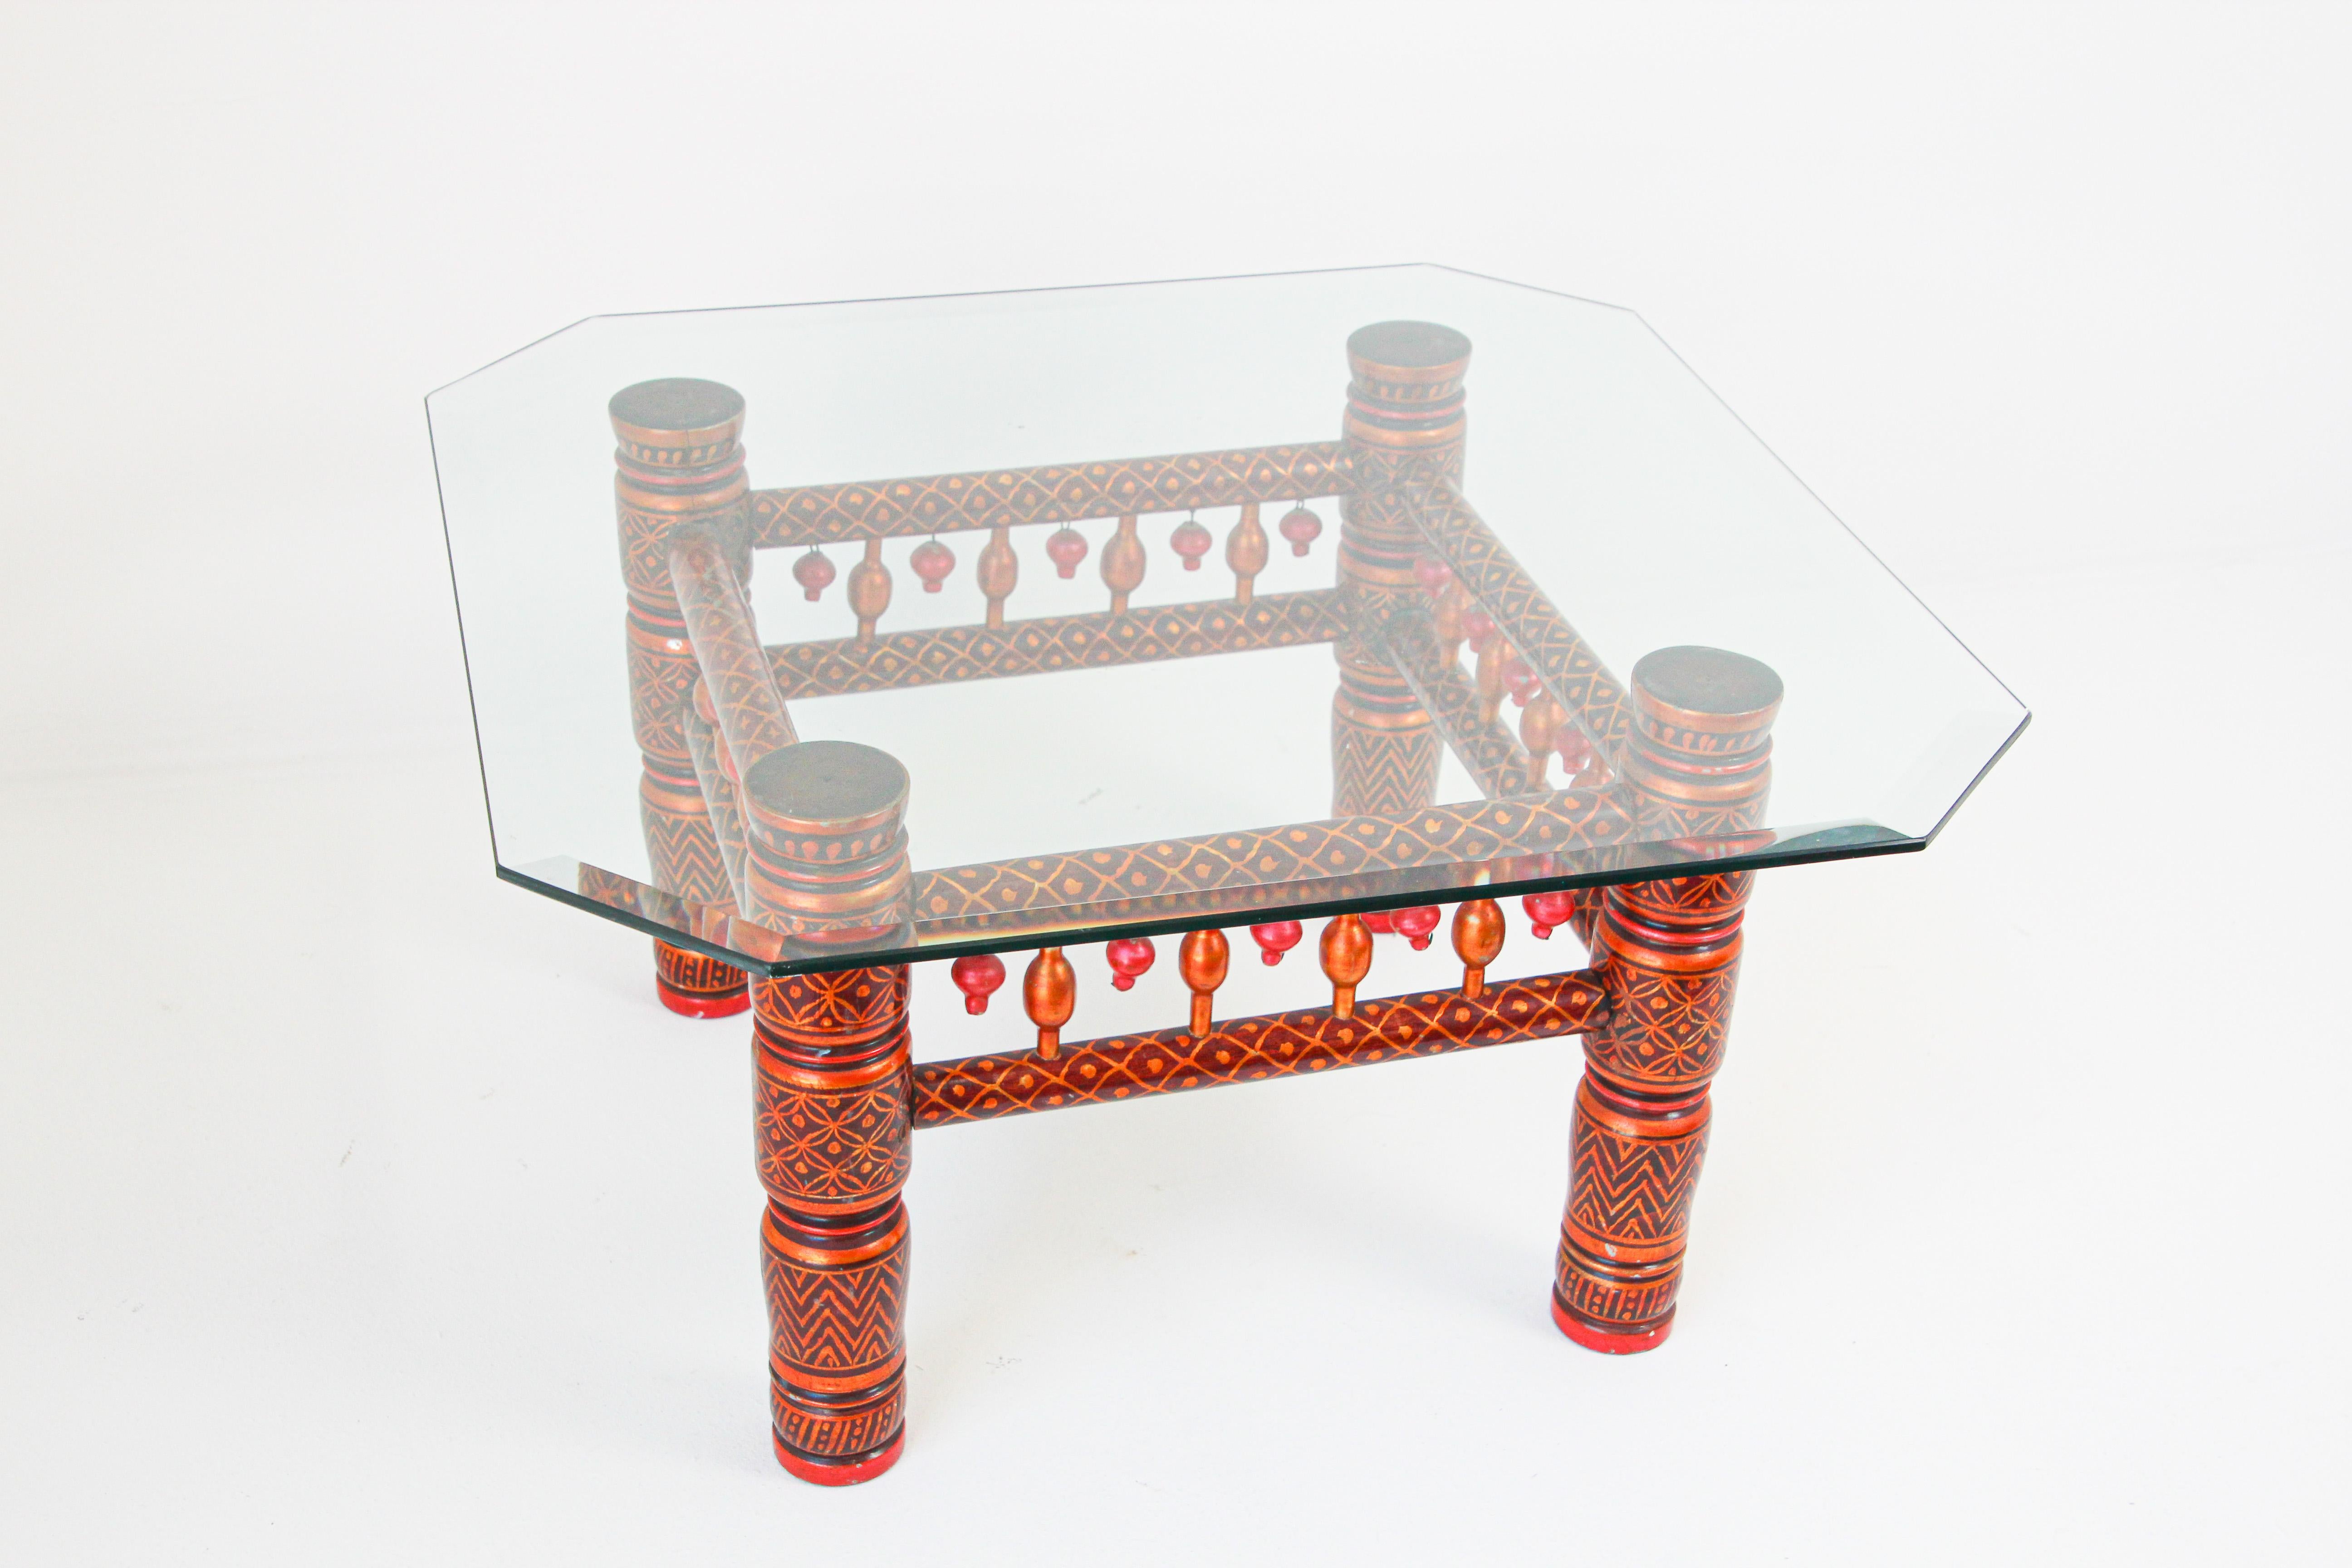 Rajasthani Indien niedriger Tisch mit Glasplatte
Rajasthani Couchtisch oder Beistelltisch in roten und goldenen Farben, mit kleinen Messingglocken.
Ideal für Ihr marokkanisches Zimmer.
Vintage Beistelltisch im Boho-Chic der Jahrhundertmitte,